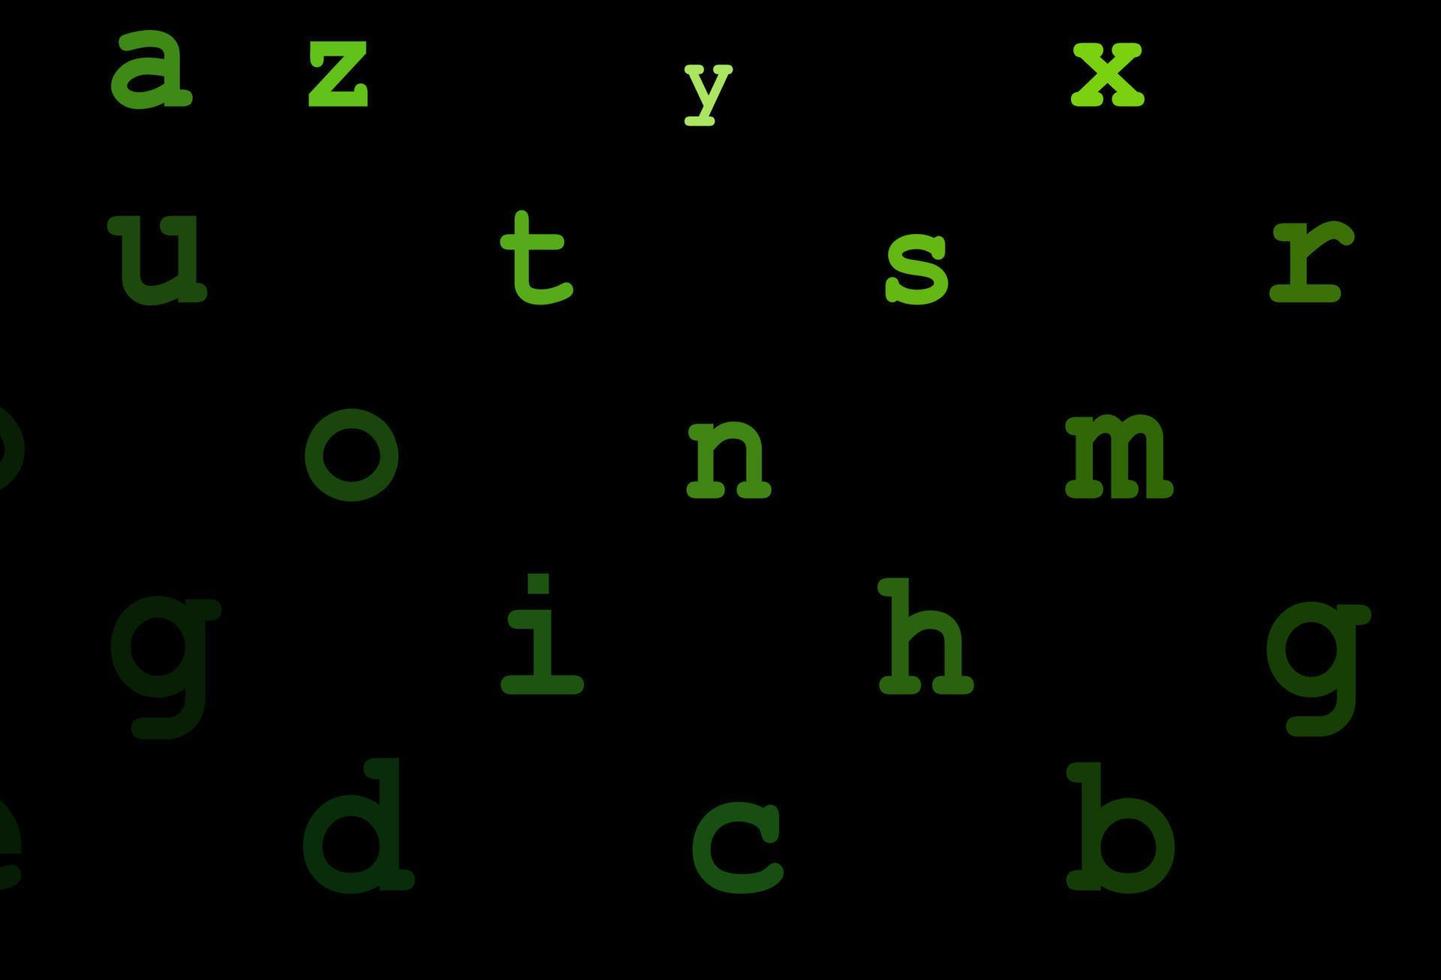 fond de vecteur vert foncé avec des signes de l'alphabet.